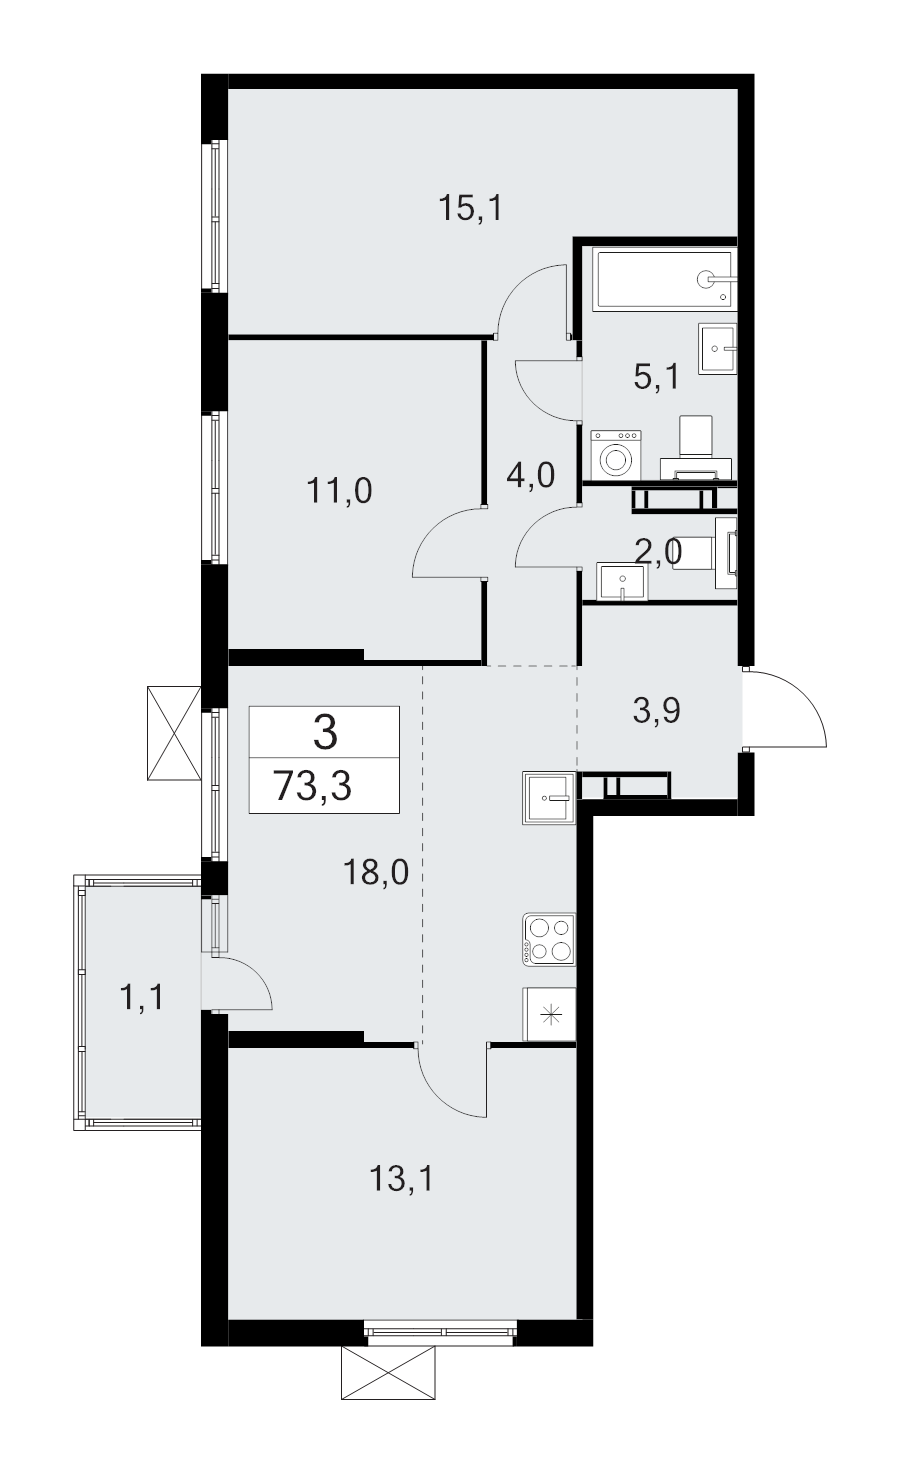 4-комнатная (Евро) квартира, 73.3 м² в ЖК "А101 Лаголово" - планировка, фото №1